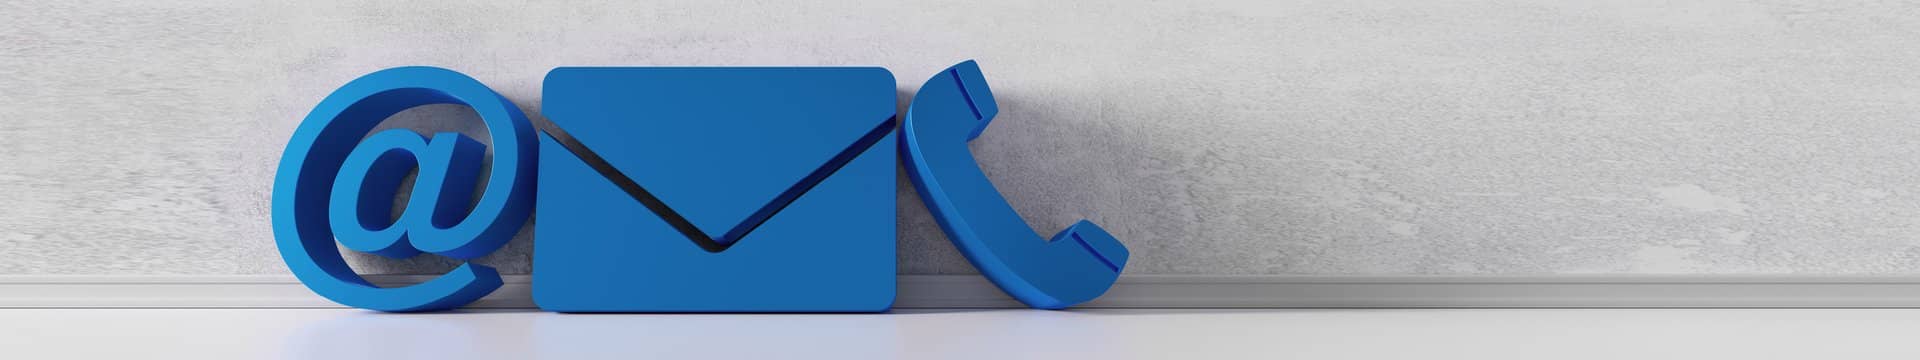 Ein blaues At-Zeichen, ein blauer Brief und ein blaues Telefon stehen an einer grauen Wand.